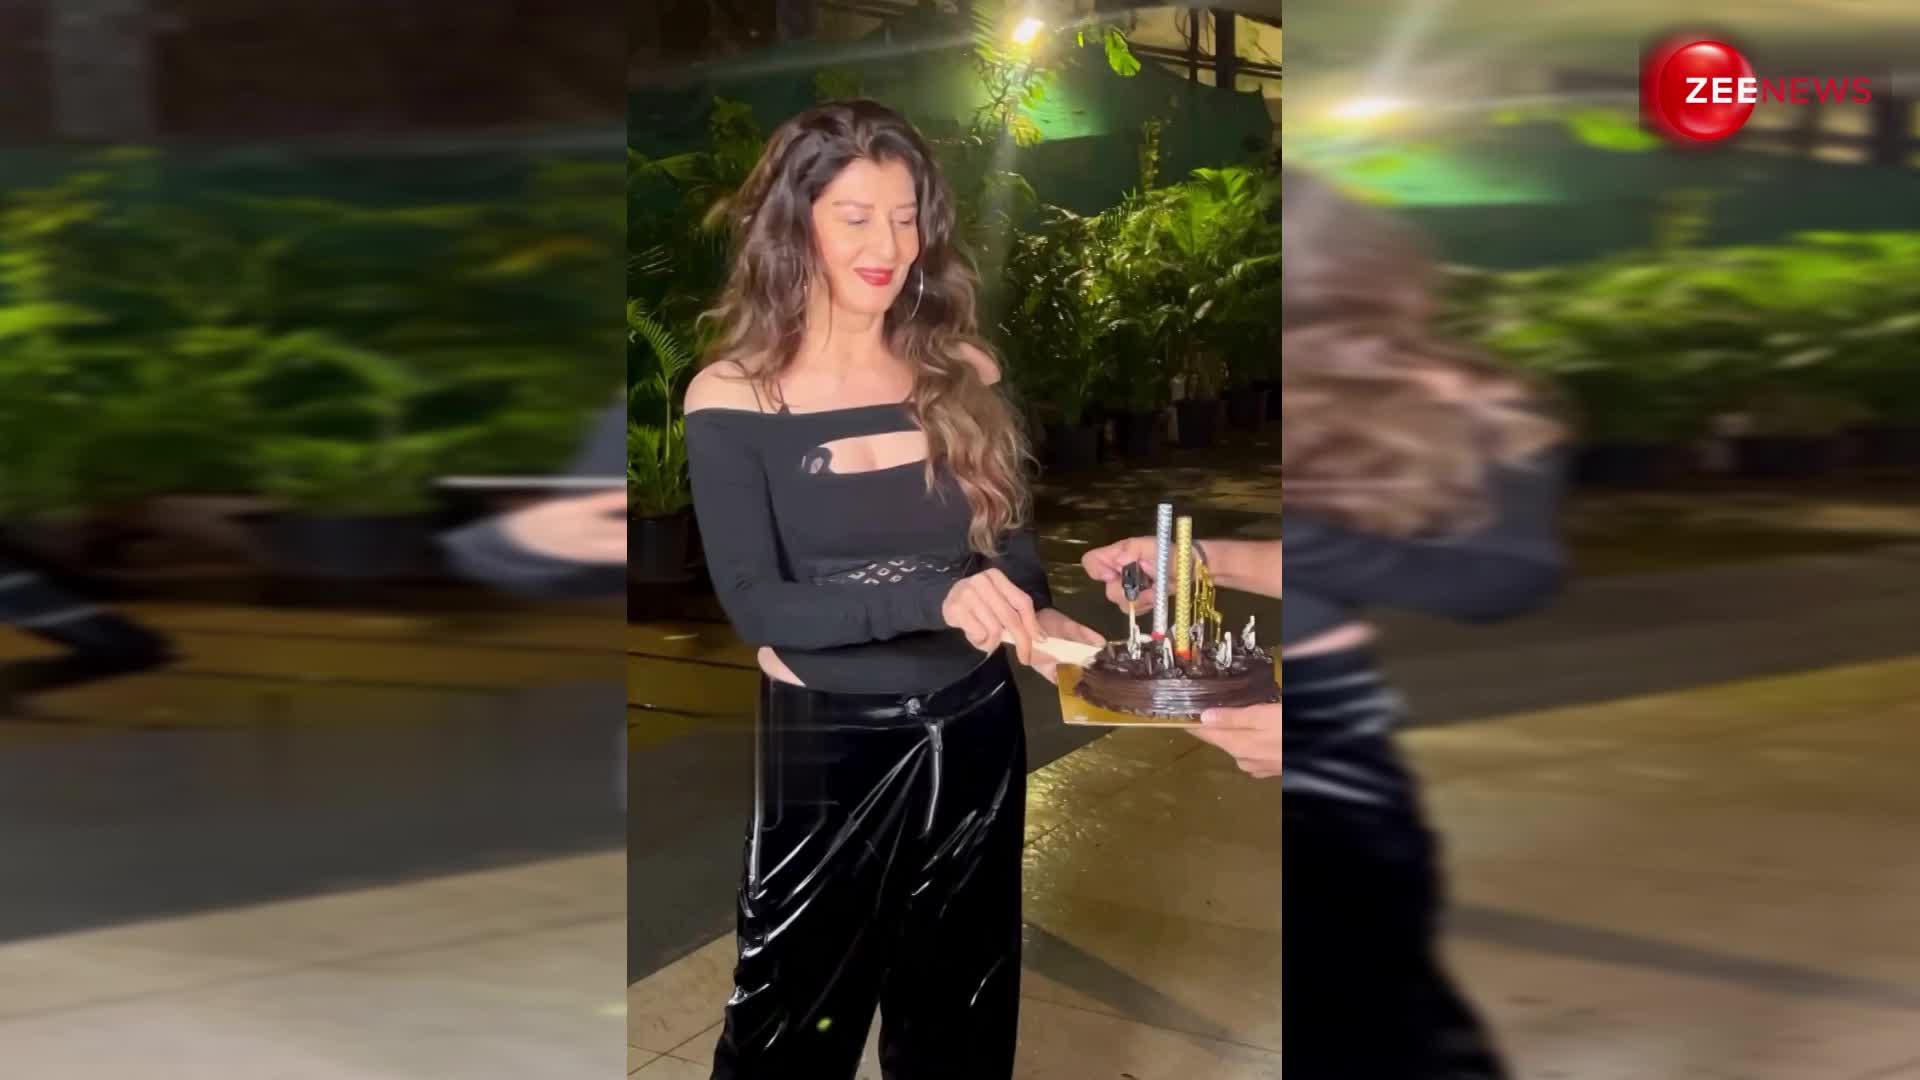 Salman Khan की गैर मौजूदगी में बर्थडे केक काटती हुई नजर आईं Sangeeta Bijlani, देखें ये वायरल वीडियो